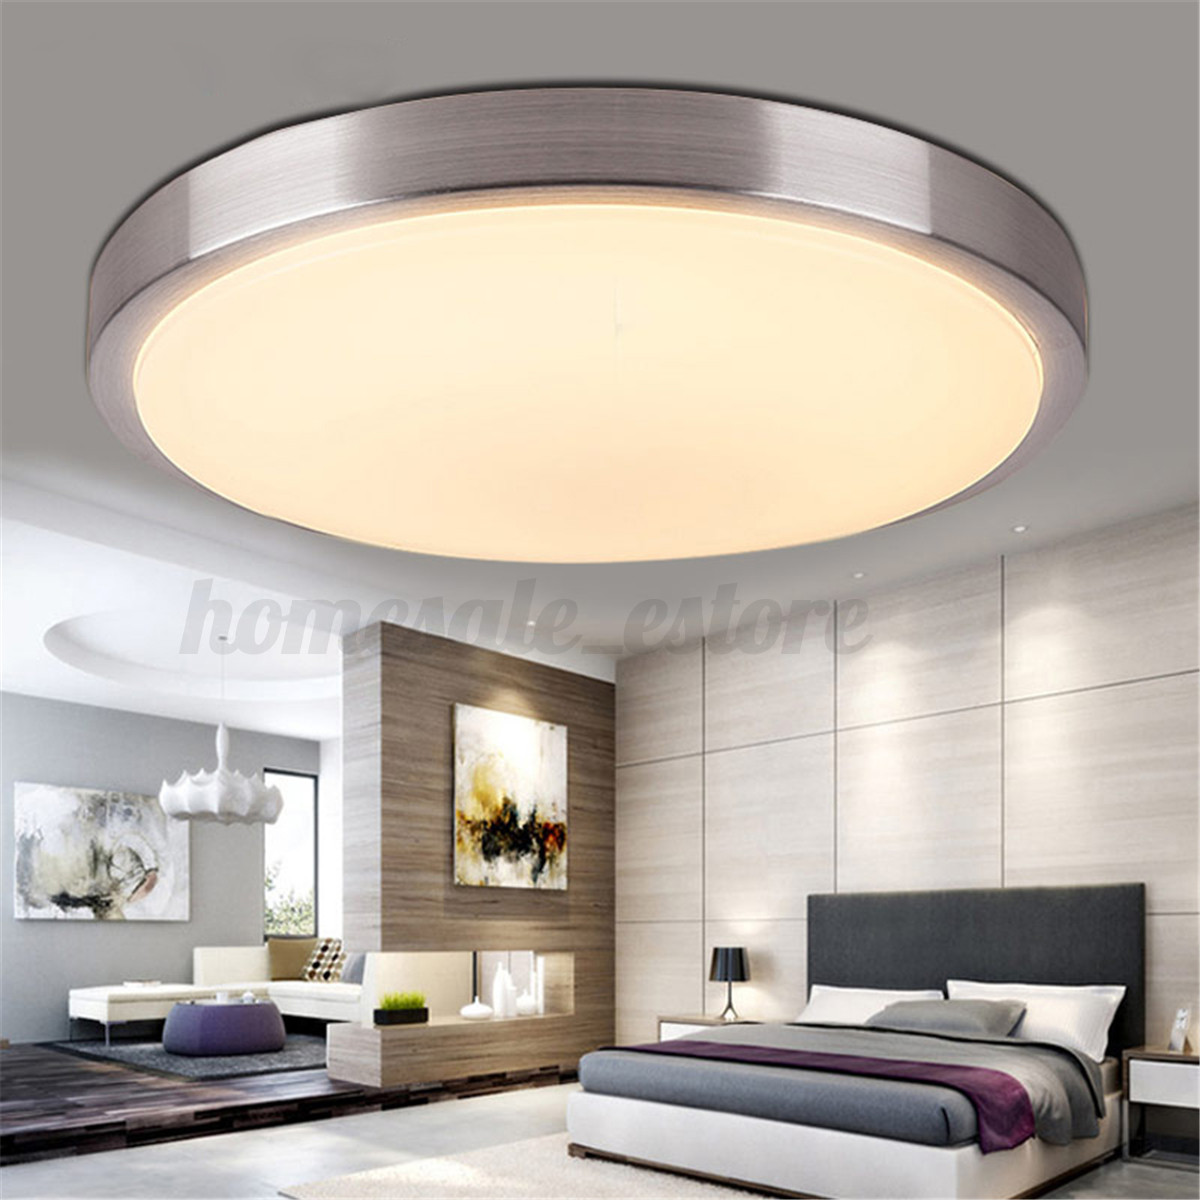 Ceiling Lights For Living Room
 5 15 36w Modern LED Round Ceiling Light Bedroom Living